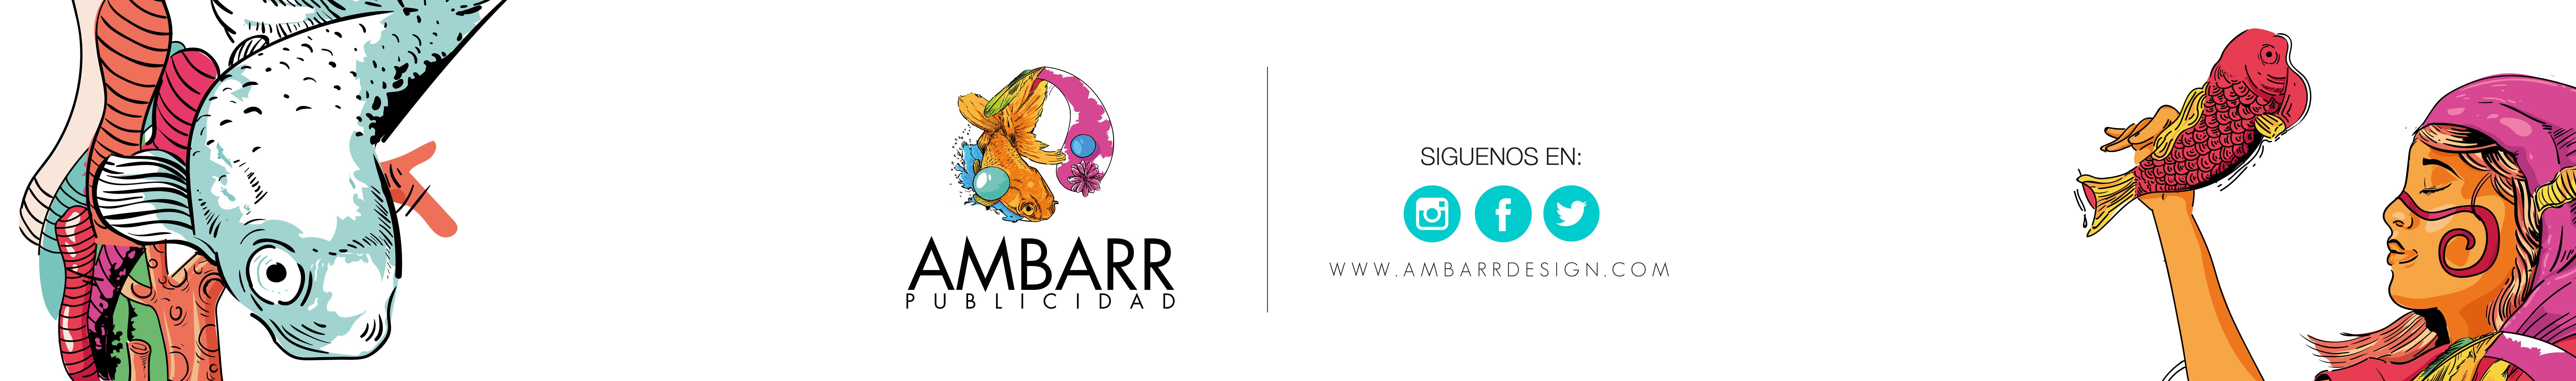 AMBARR DESIGN's profile banner